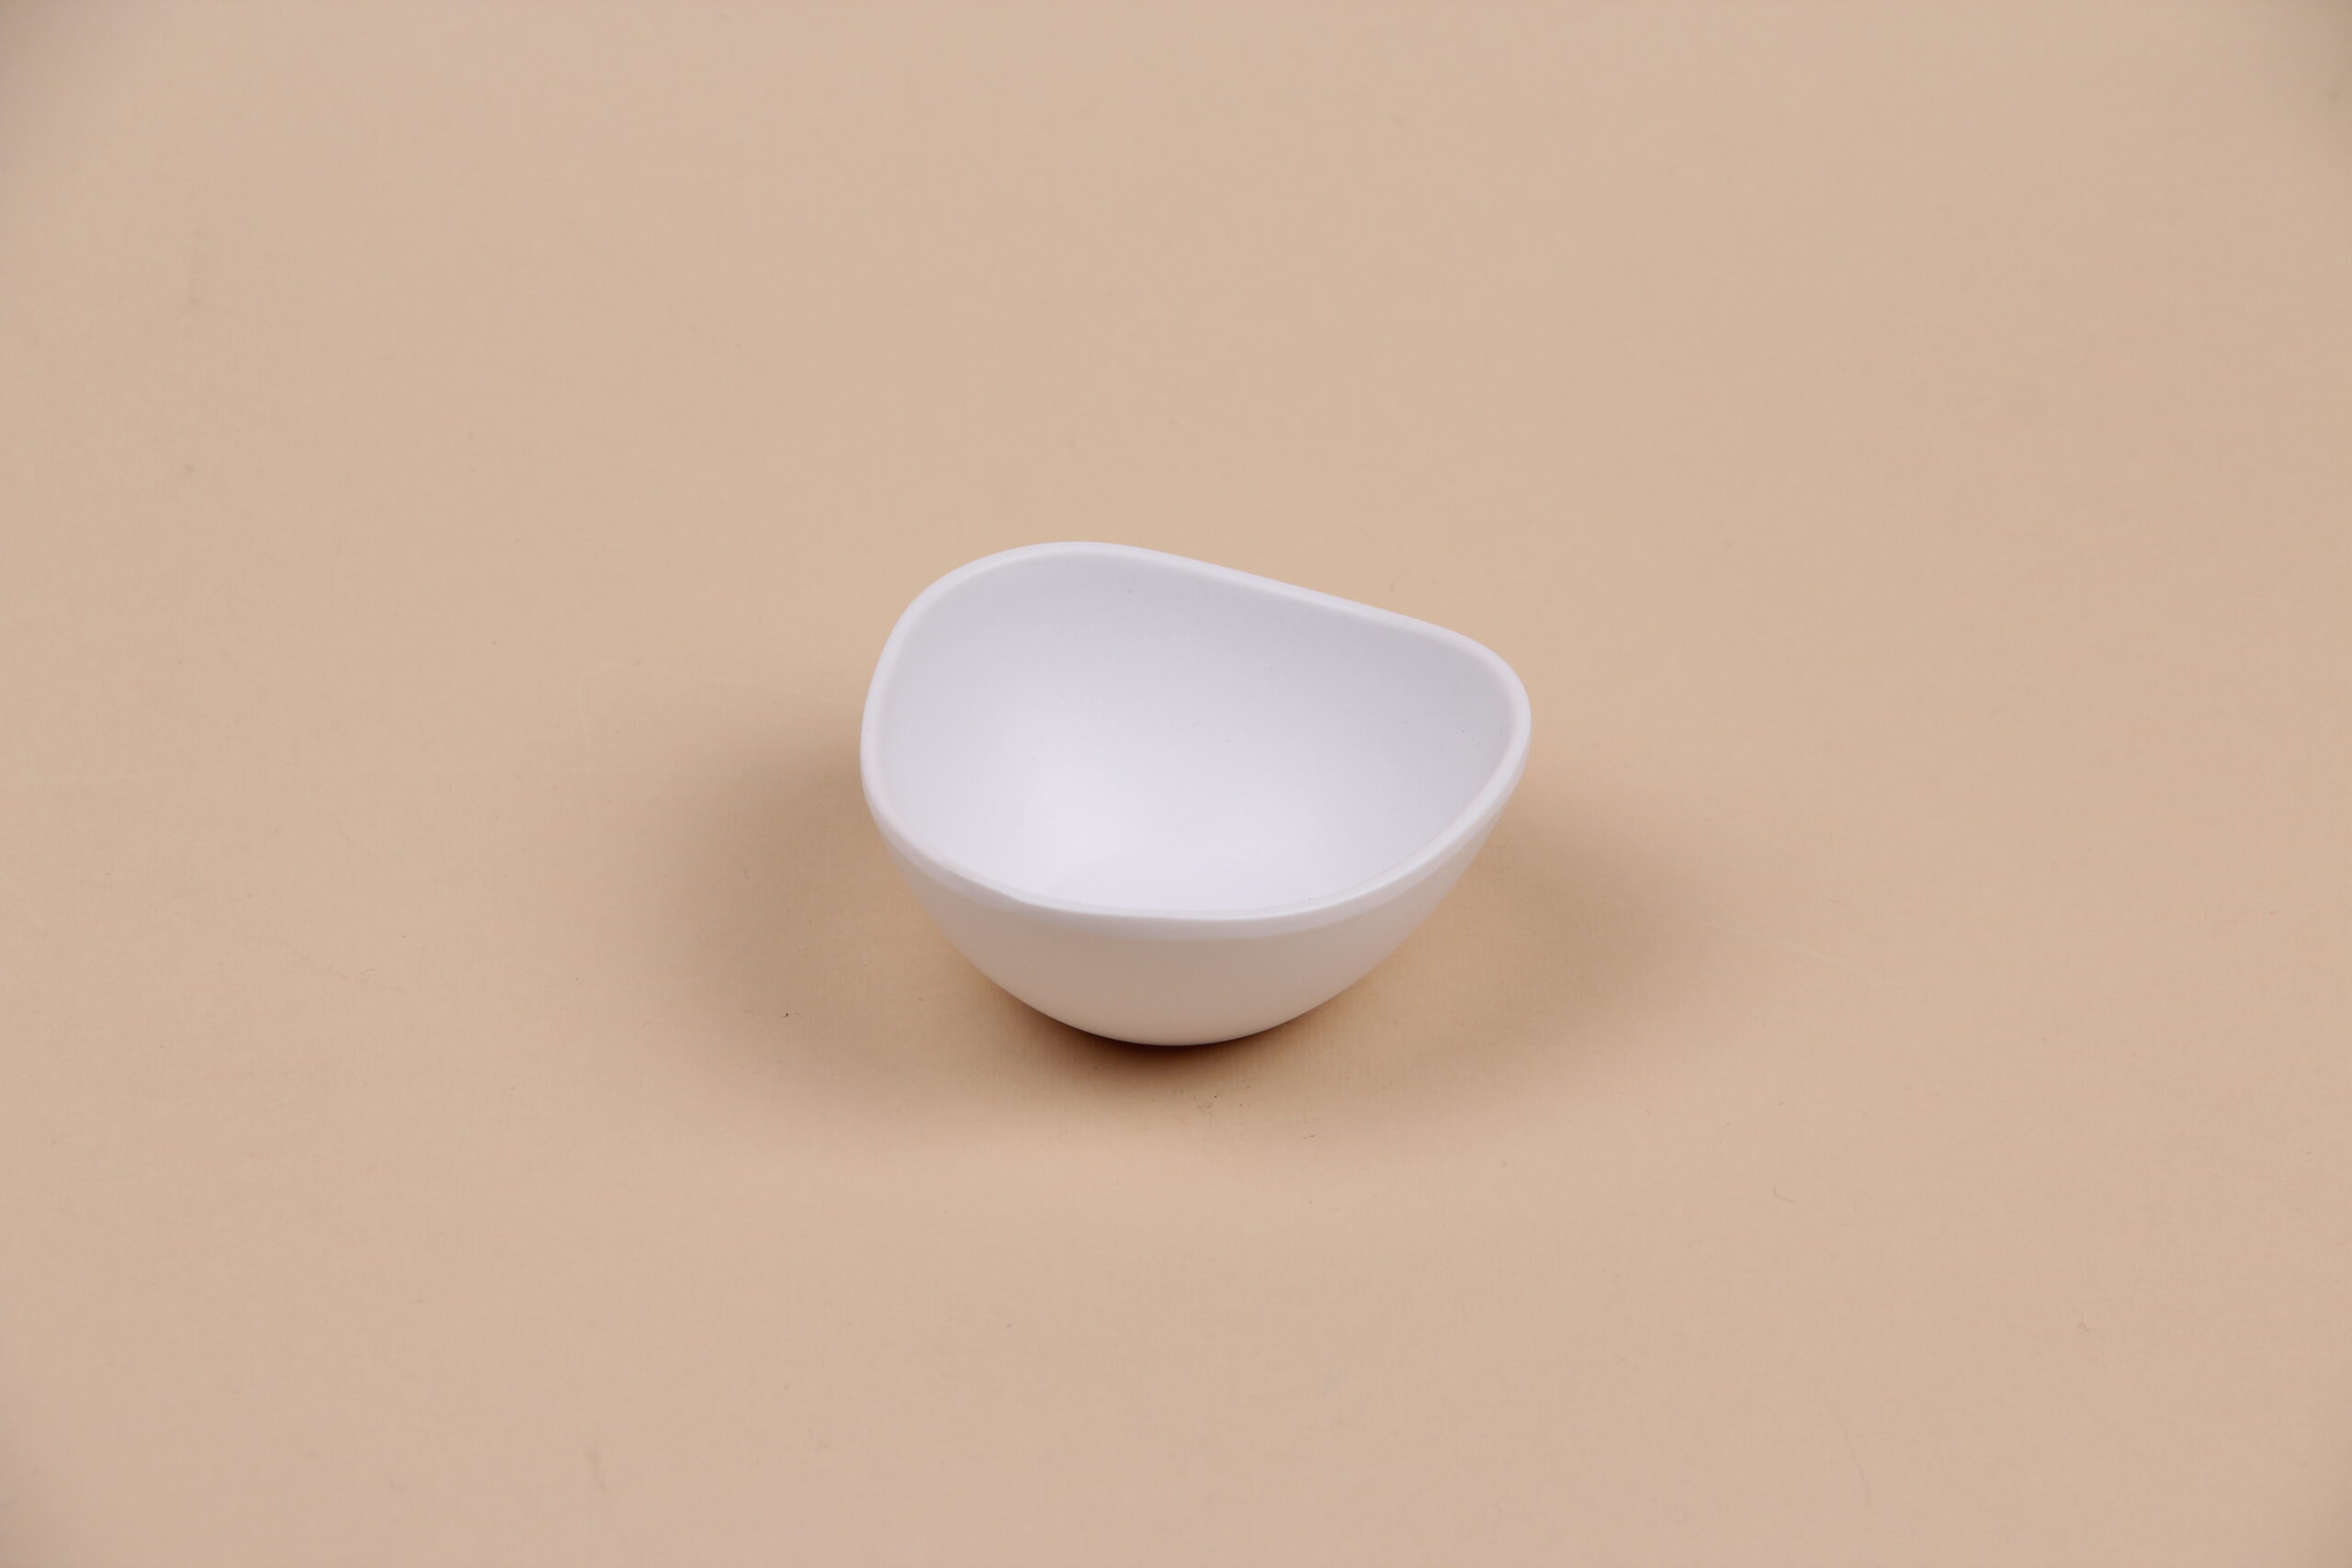 Чаша для соуса треугольная округлая белая, 50 мл, арт. 607072